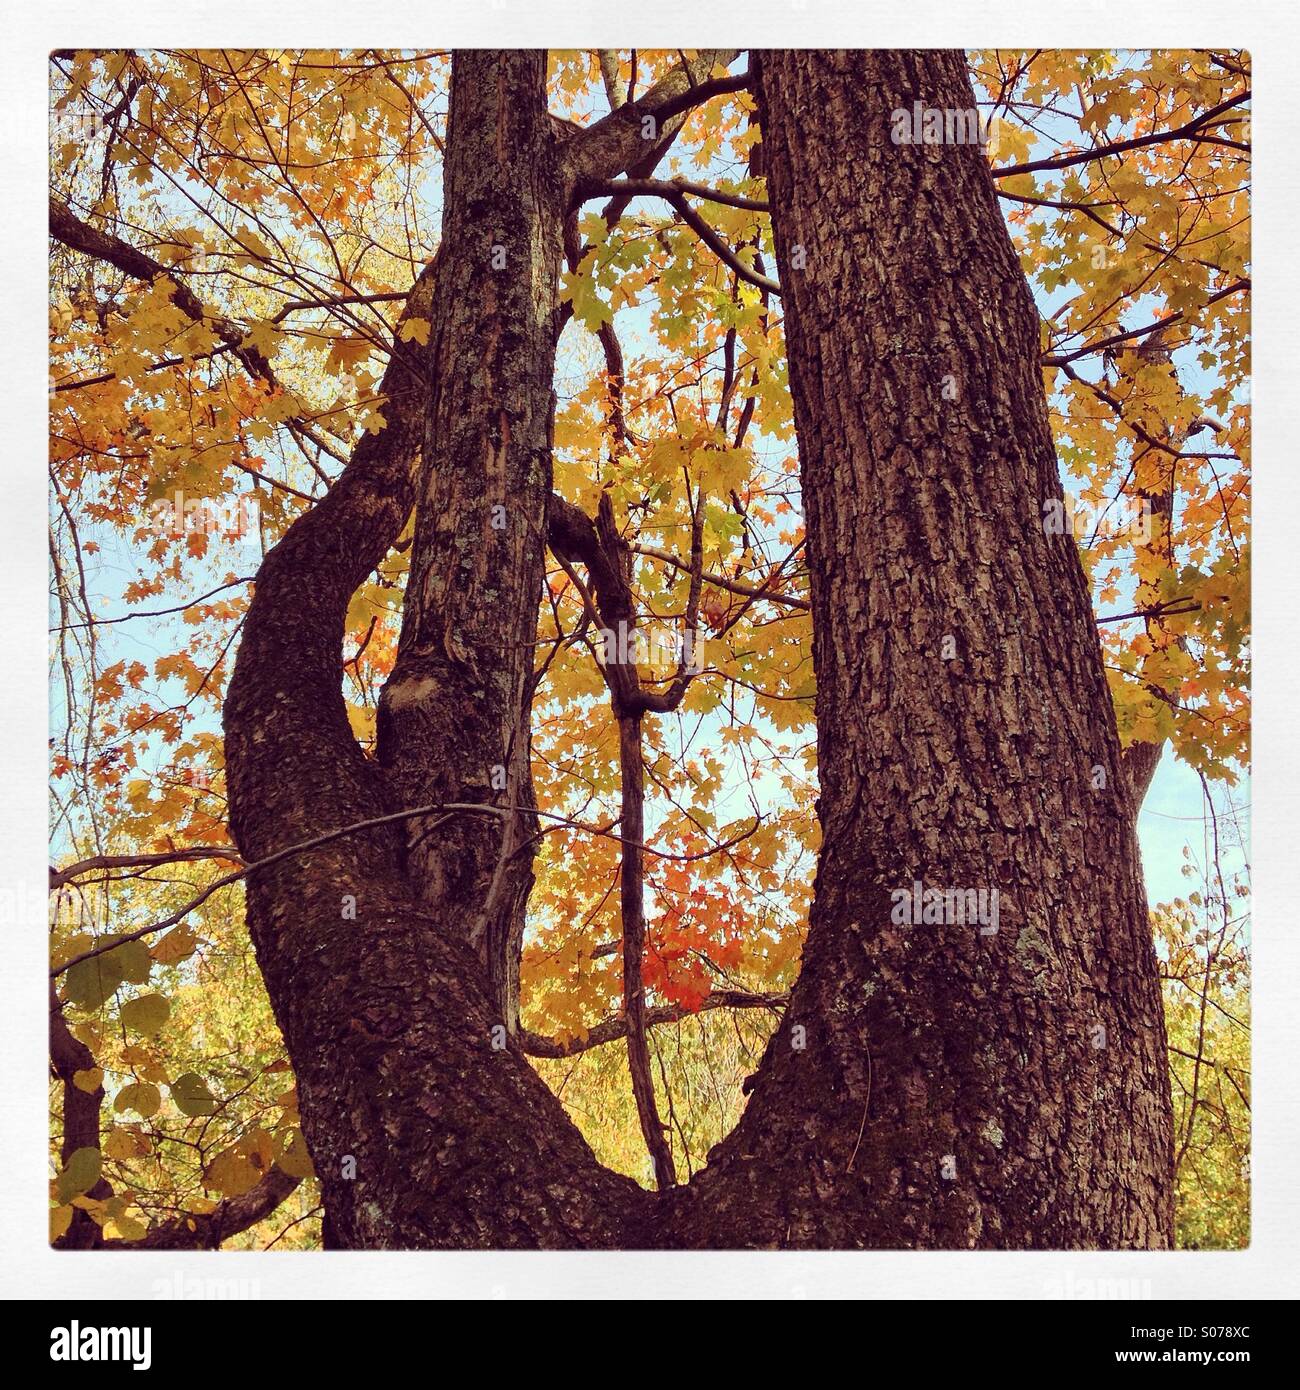 Ein Baum schmiegt sich an einen anderen. Herbstfarben. Stockfoto